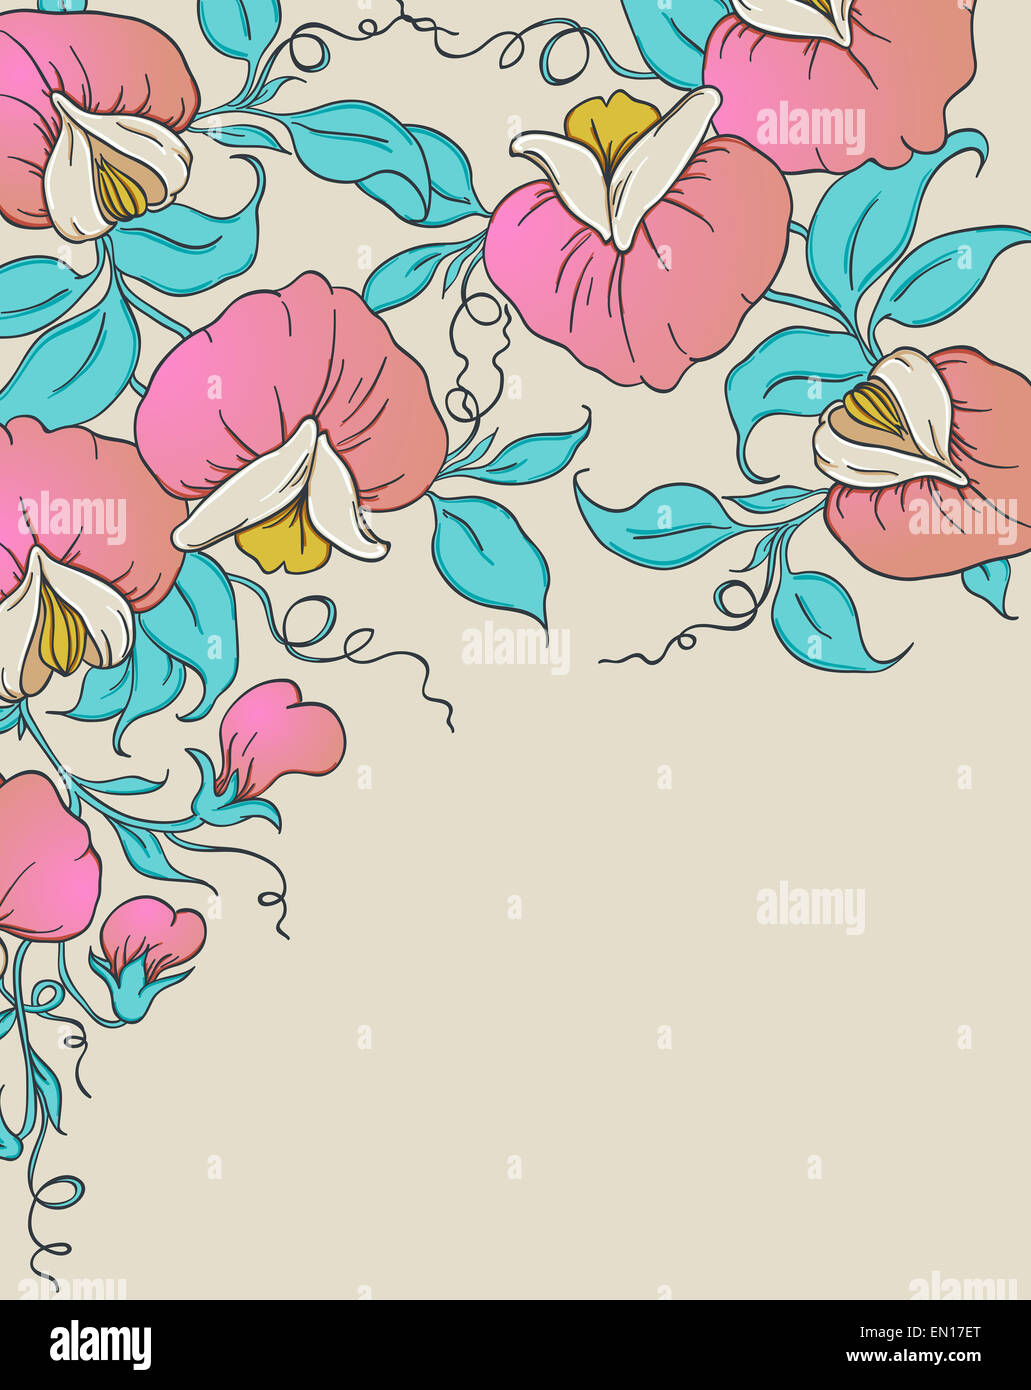 Floral background avec de pois sucré rose Banque D'Images